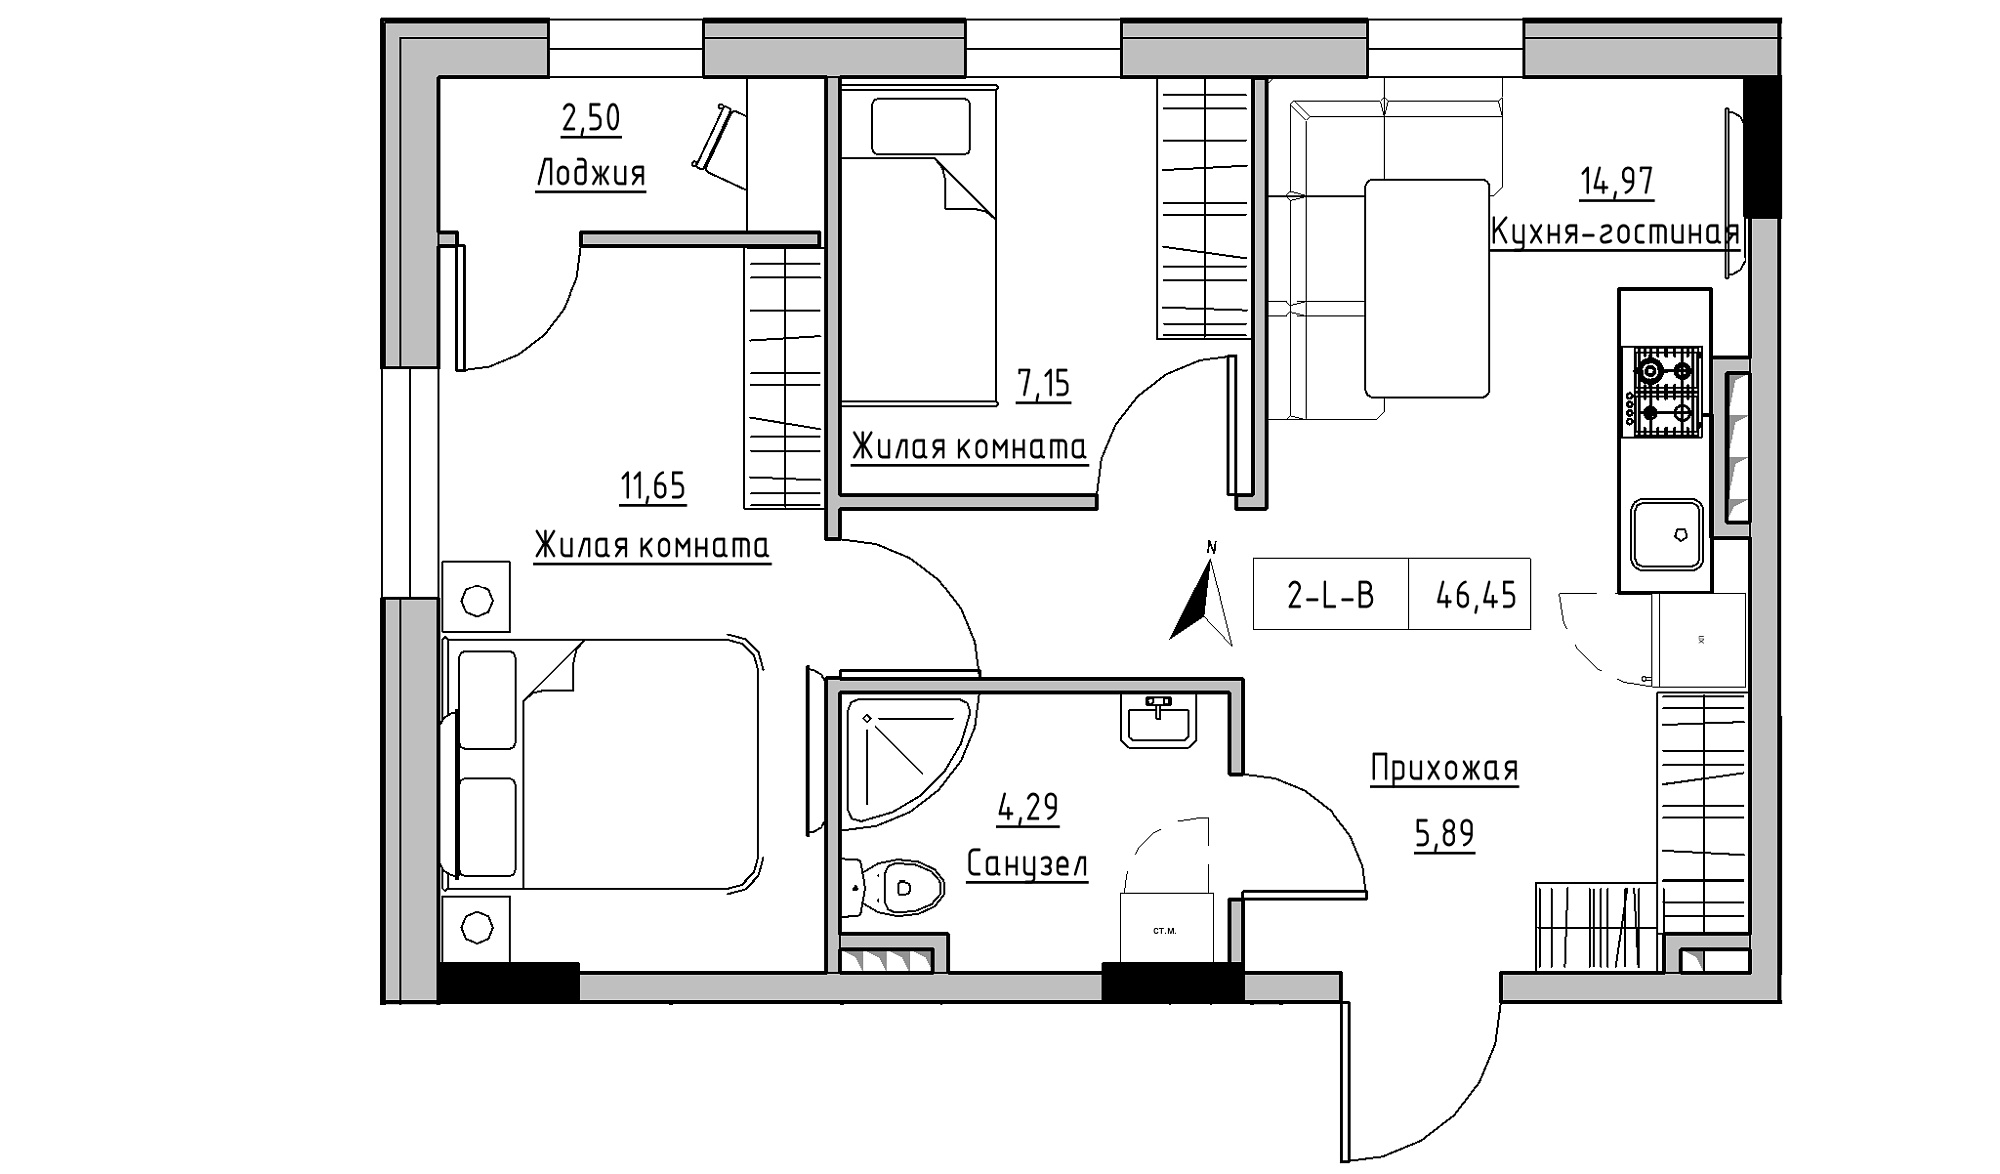 Планировка 2-к квартира площей 46.45м2, KS-025-03/0006.